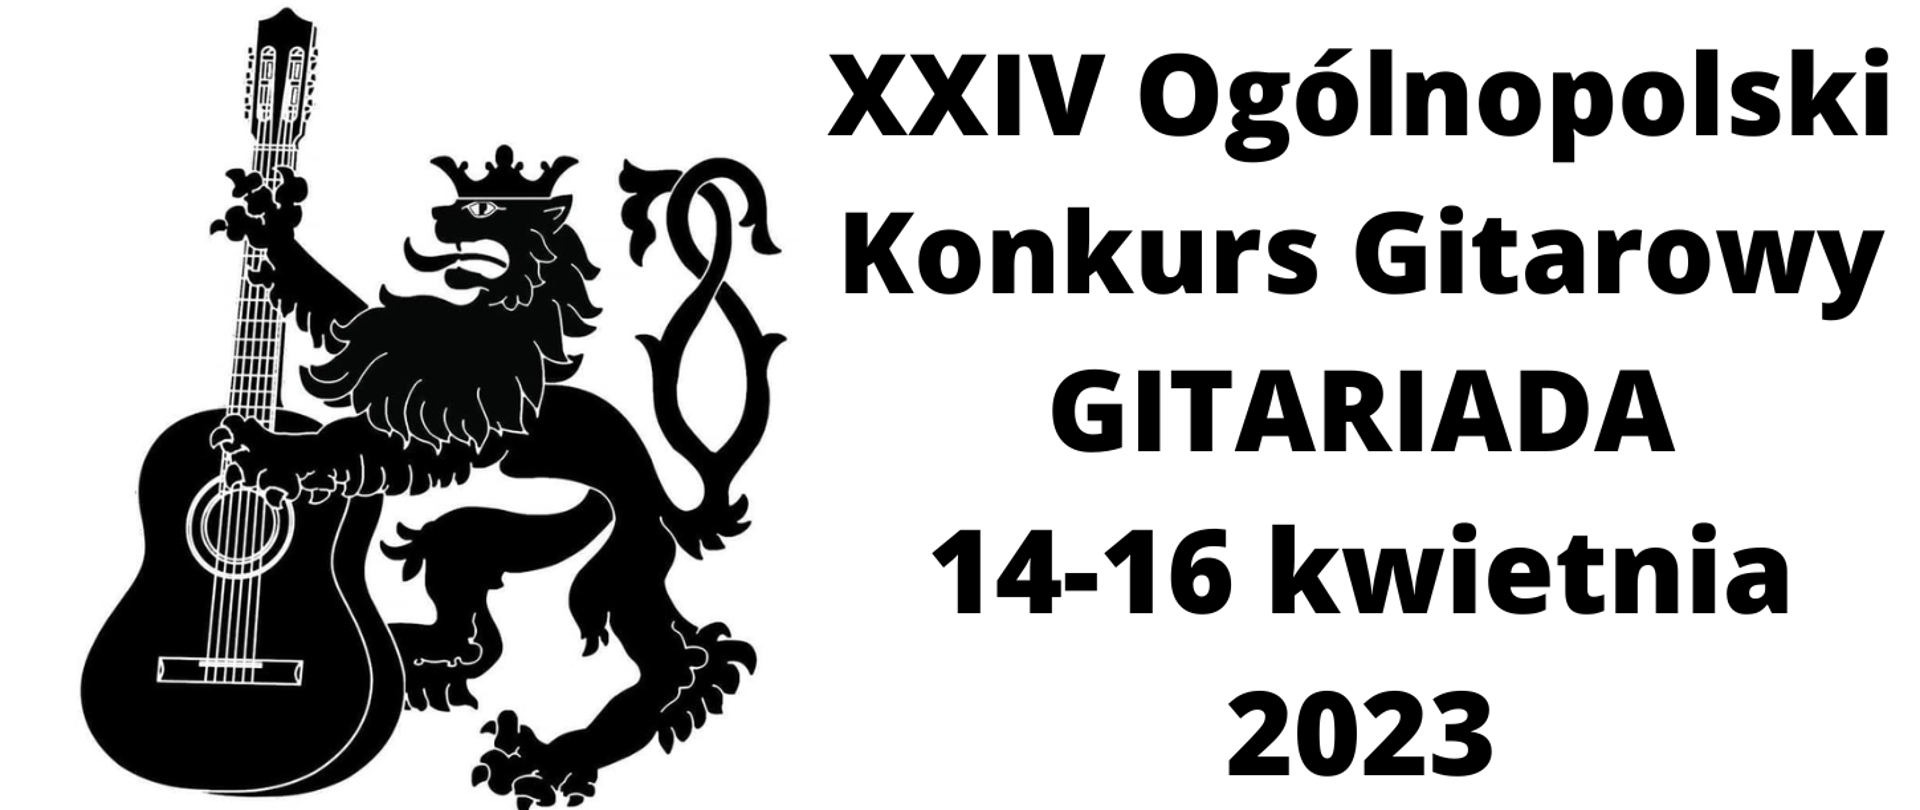 Grafika na białym tle z logiem konkursu oraz tekstem XXIV Ogólnopolski Konkurs Gitarowy GITARIADA 14-16 kwietnia 2023